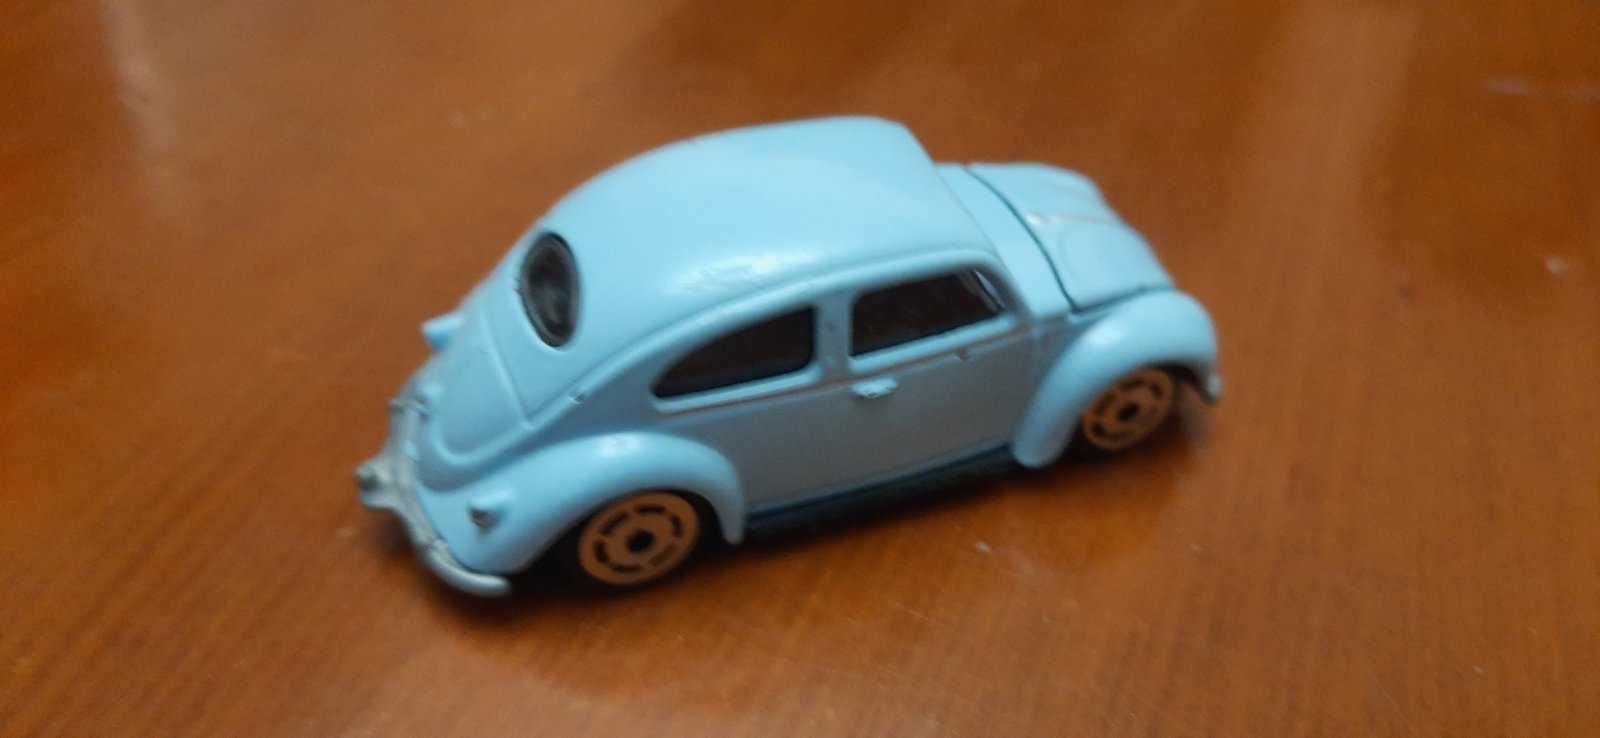 масштабная модель автомобиля VW Beetle Maiorette ECH 1/46 REF 241A